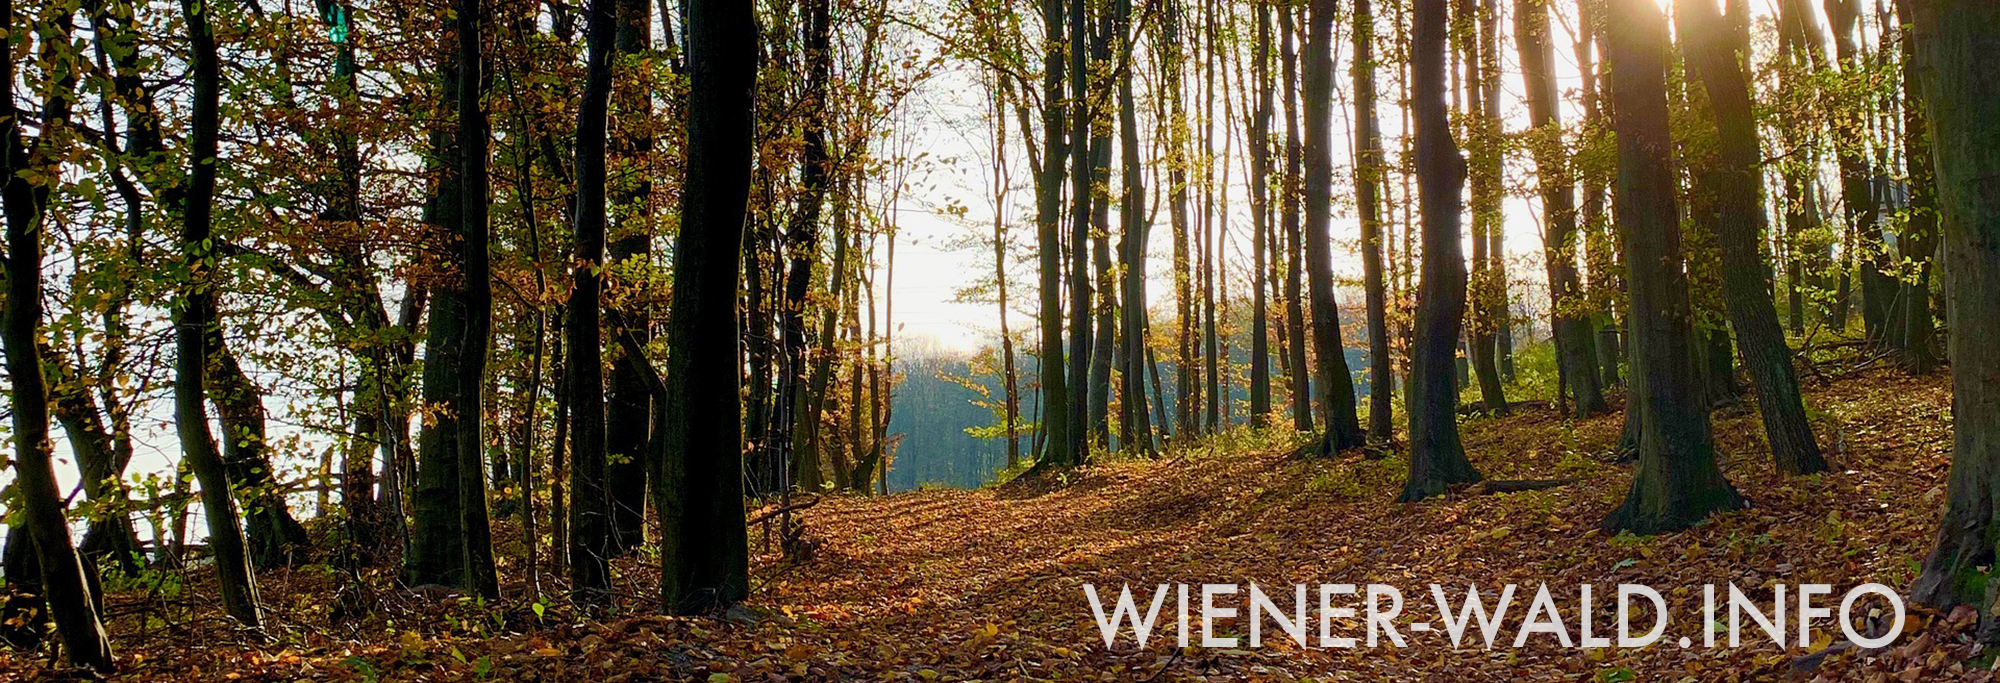 (c) Wiener-wald.info